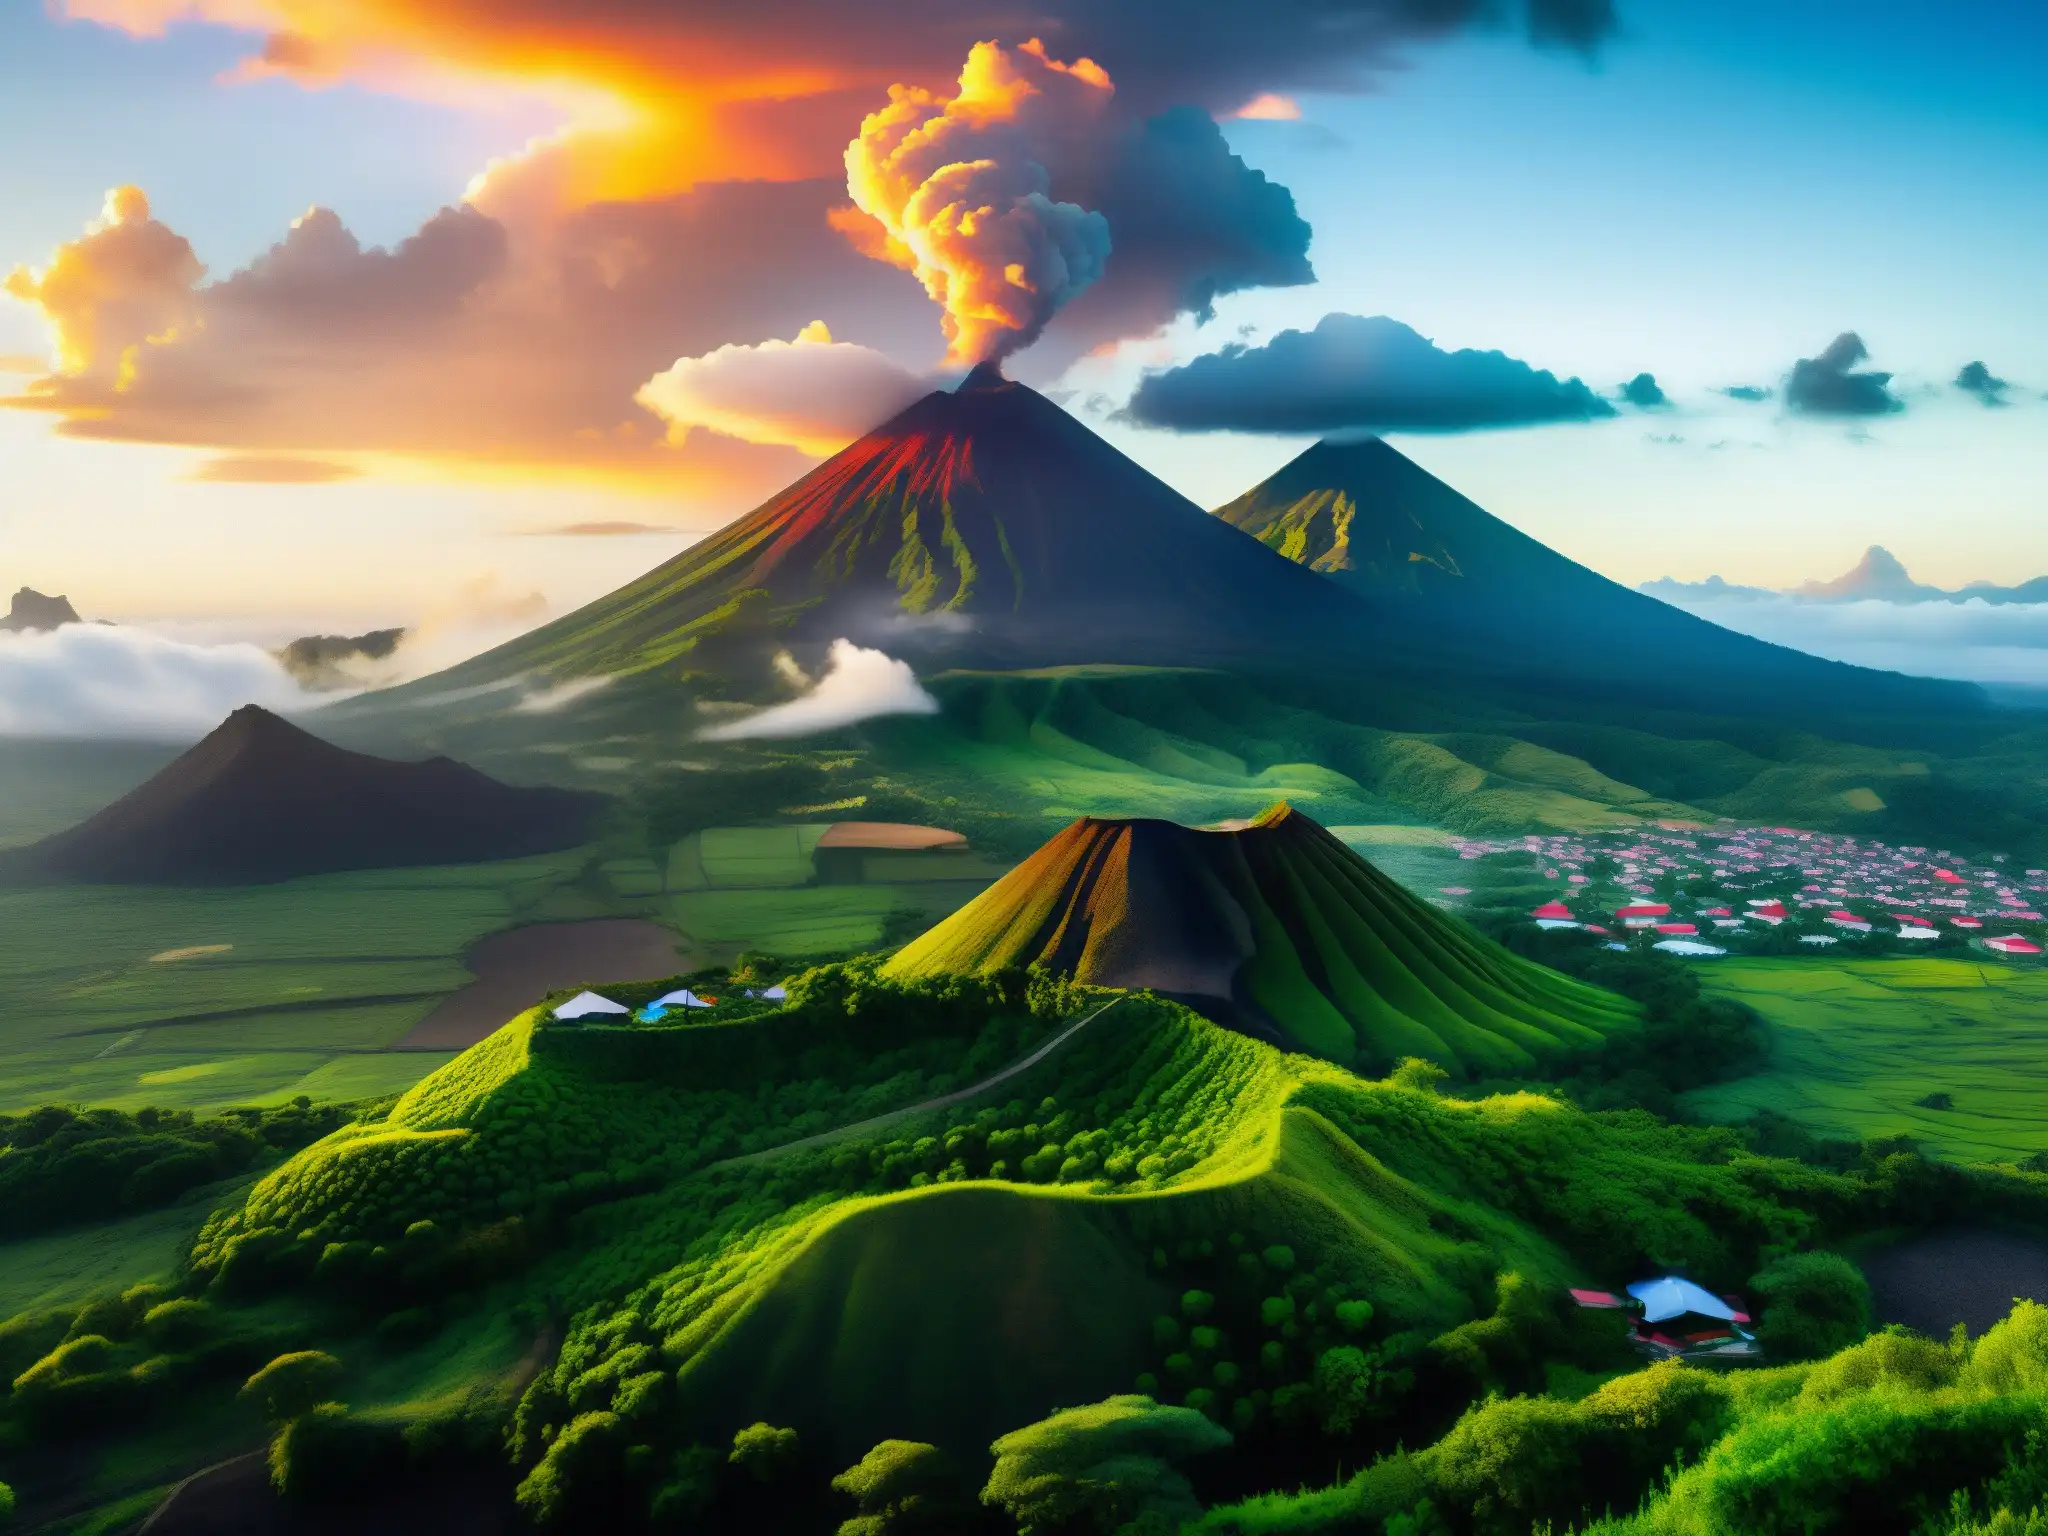 Imponentes volcanes con vegetación exuberante, aldeanos y atardecer dorado